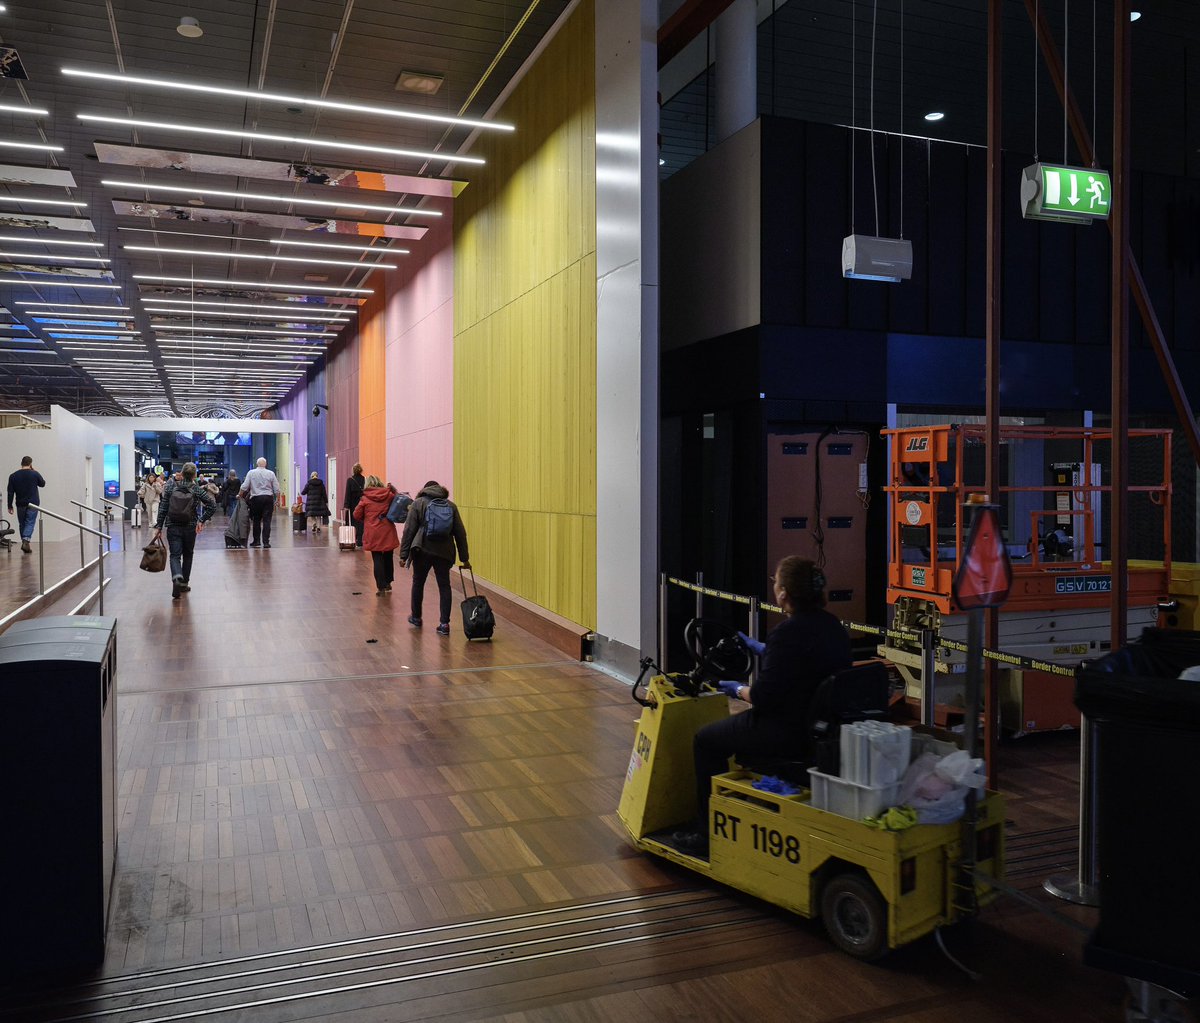 Et af DK's største kunstværker opsættes nu i Københavns Lufthavn. Maleriet skal camouflere en stor ombygning af terminalen, der står på de næste par år. Vi glæder os til at præsentere: 'Something in the way you move' af Ruth Campau 🎨 @CreatorProjects #zesoarchitects #ruthcampau